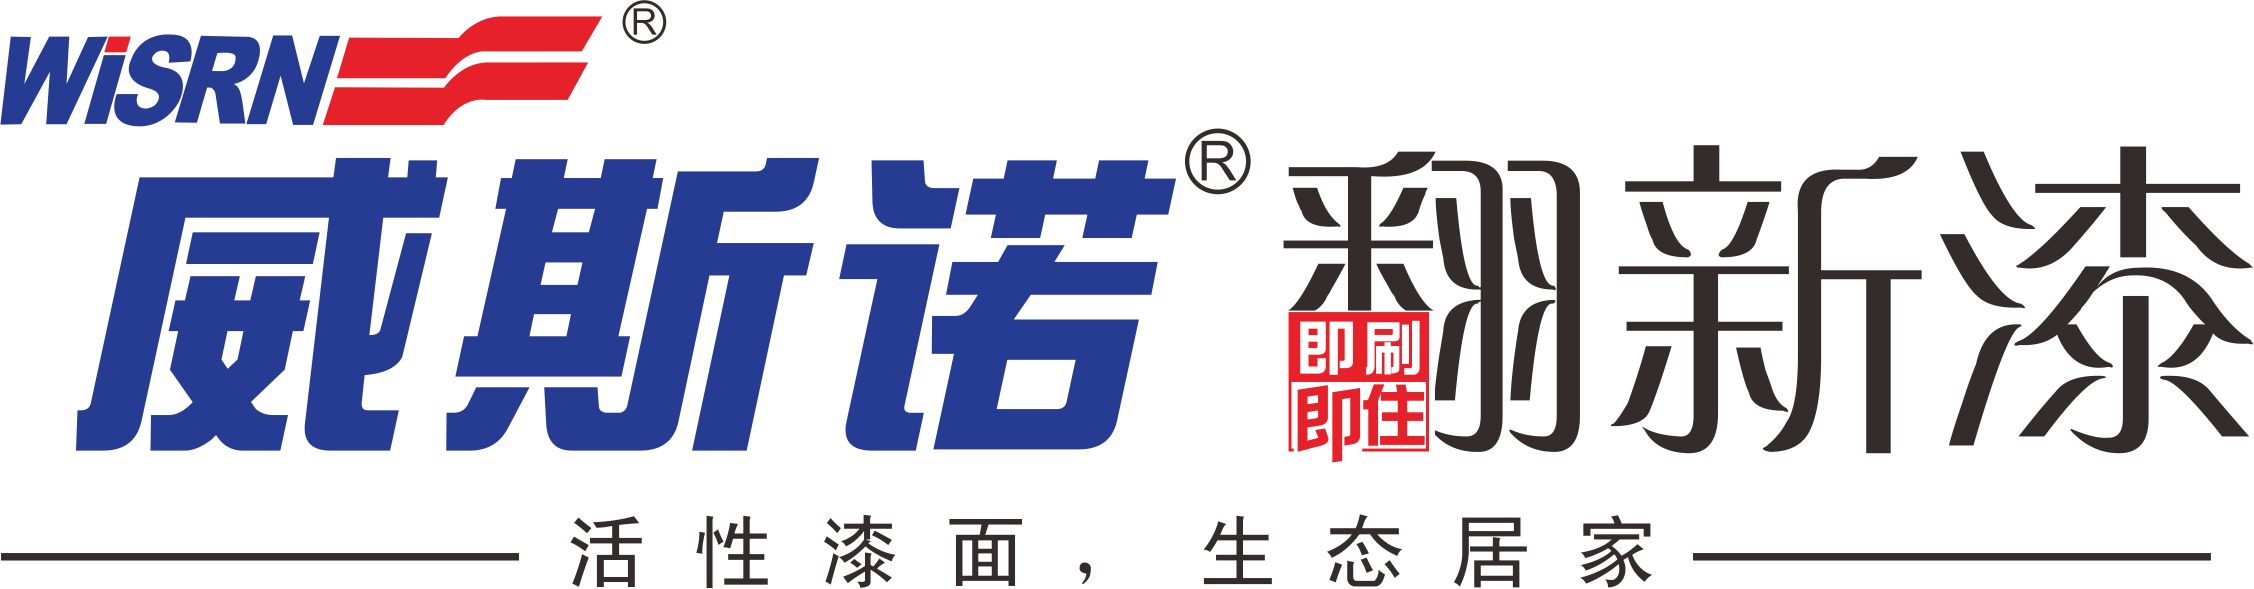 威九州体育登录网页 bet9娱乐app平台下载漆logo2.png